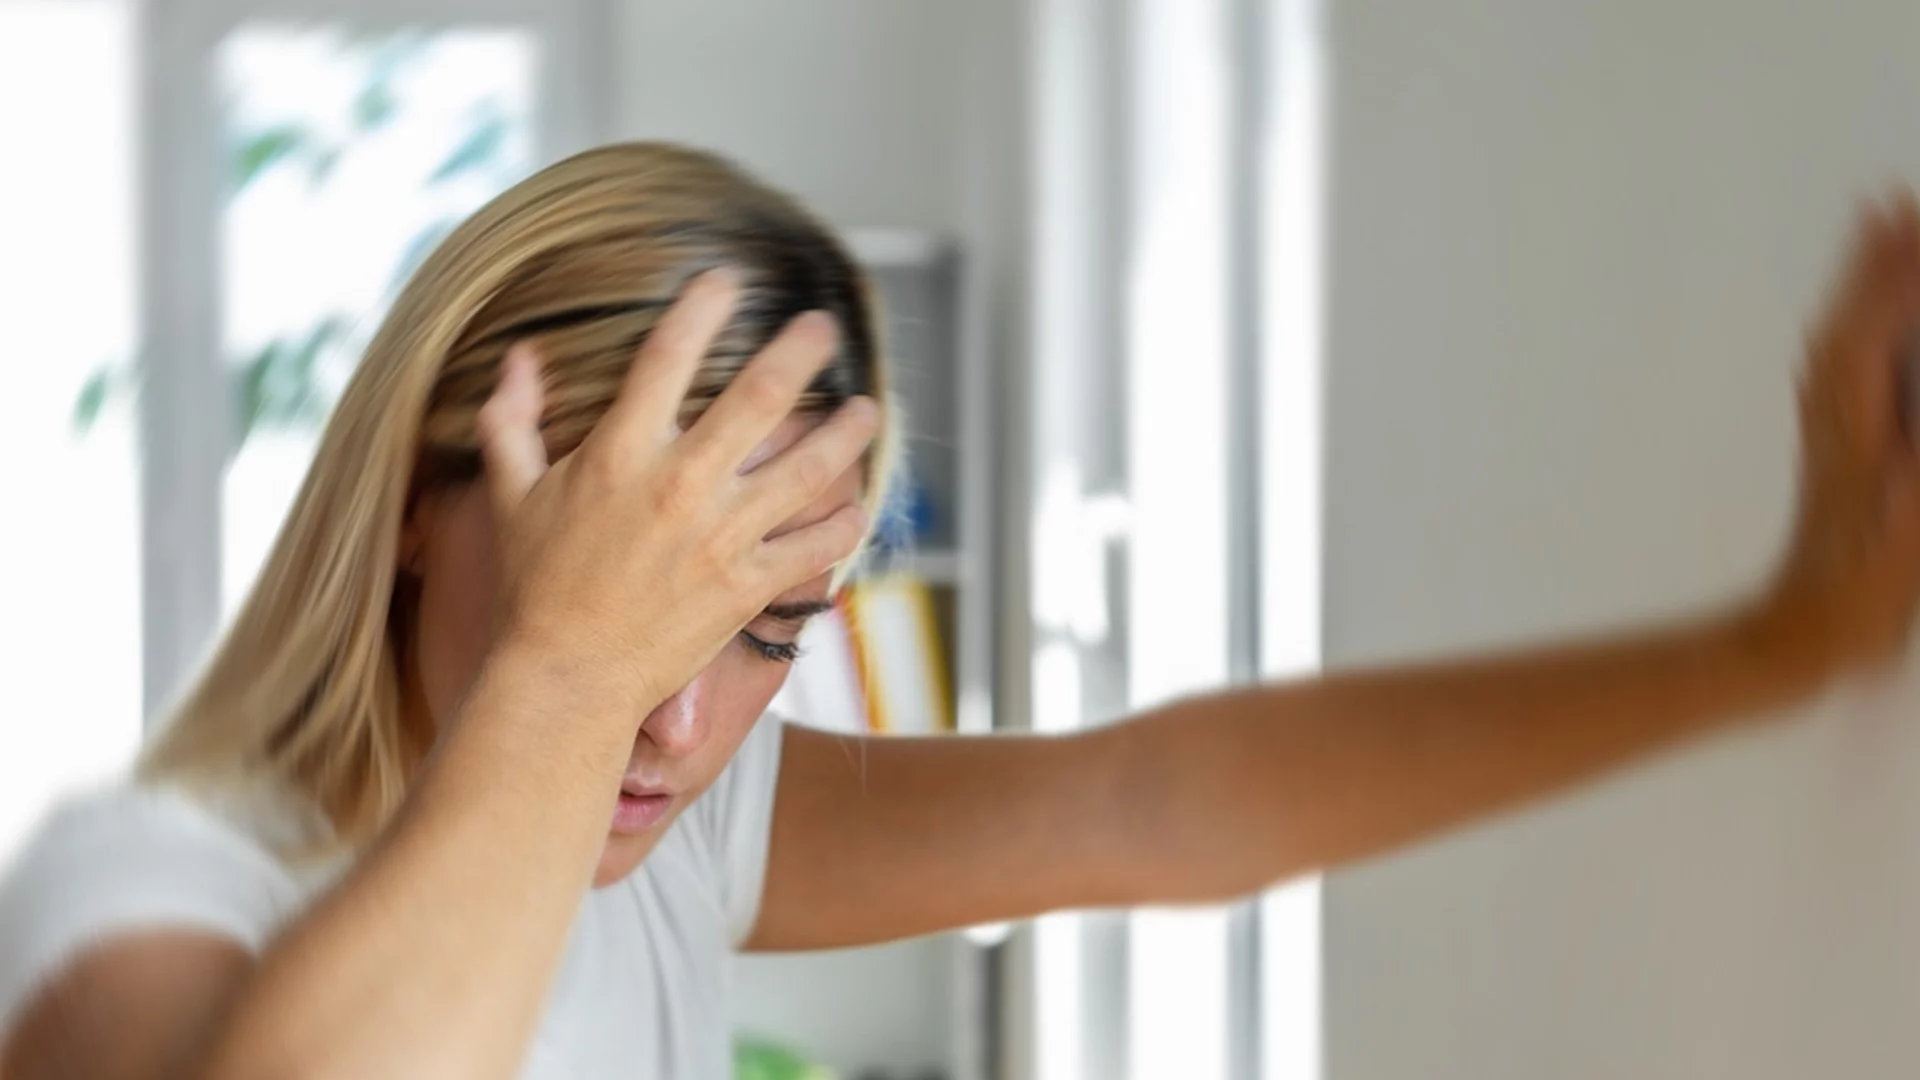 Лекар: 7 причини за главоболие - някои от тях ще ви изненадат